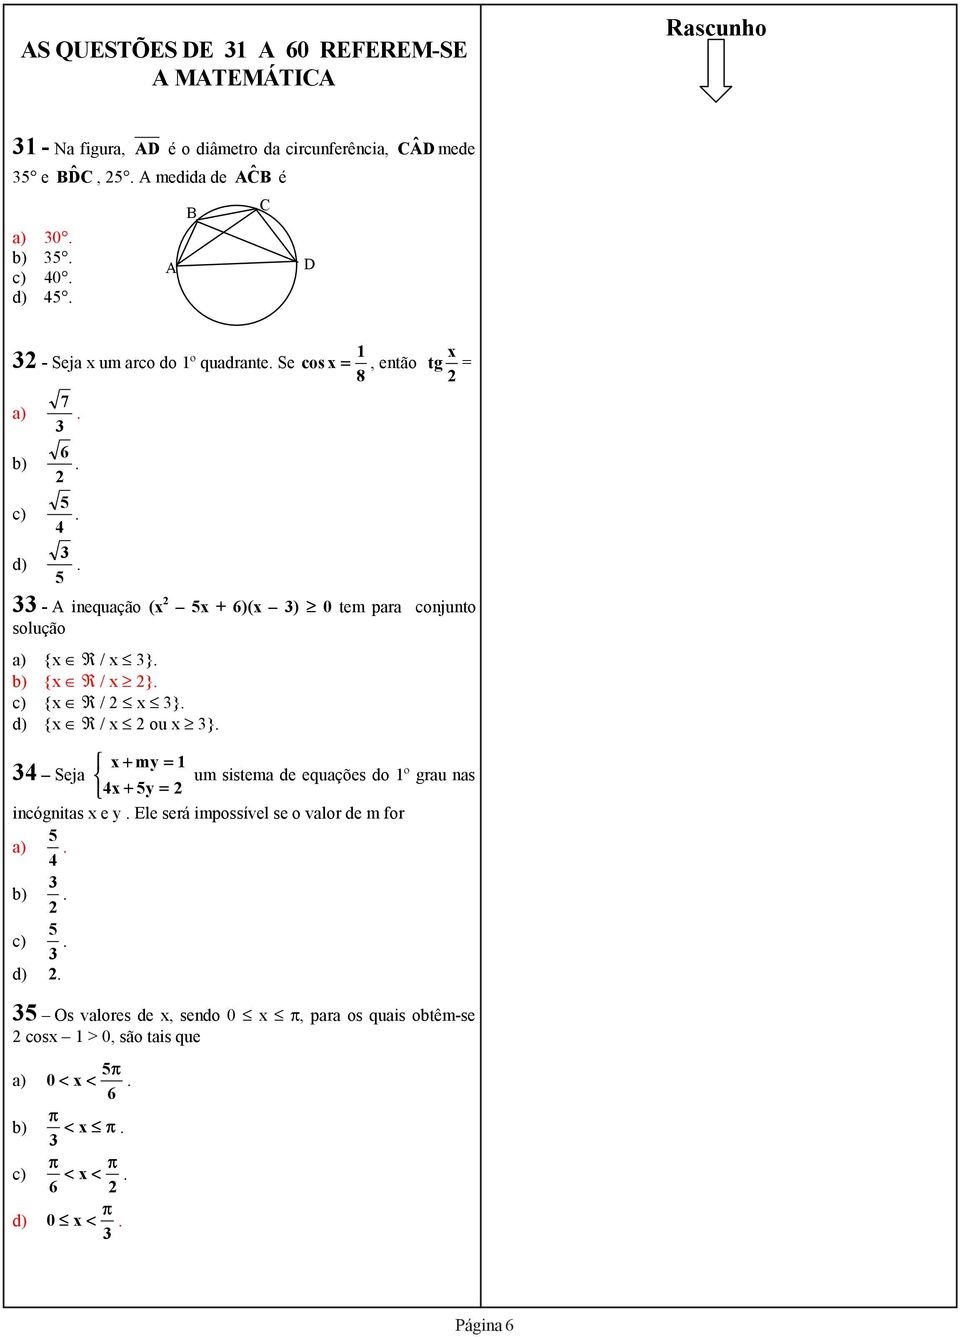 5 - A inequação (x 2 5x + 6)(x ) 0 tem para conjunto solução a) {x R / x }. b) {x R / x 2}. c) {x R / 2 x }. d) {x R / x 2 ou x }.